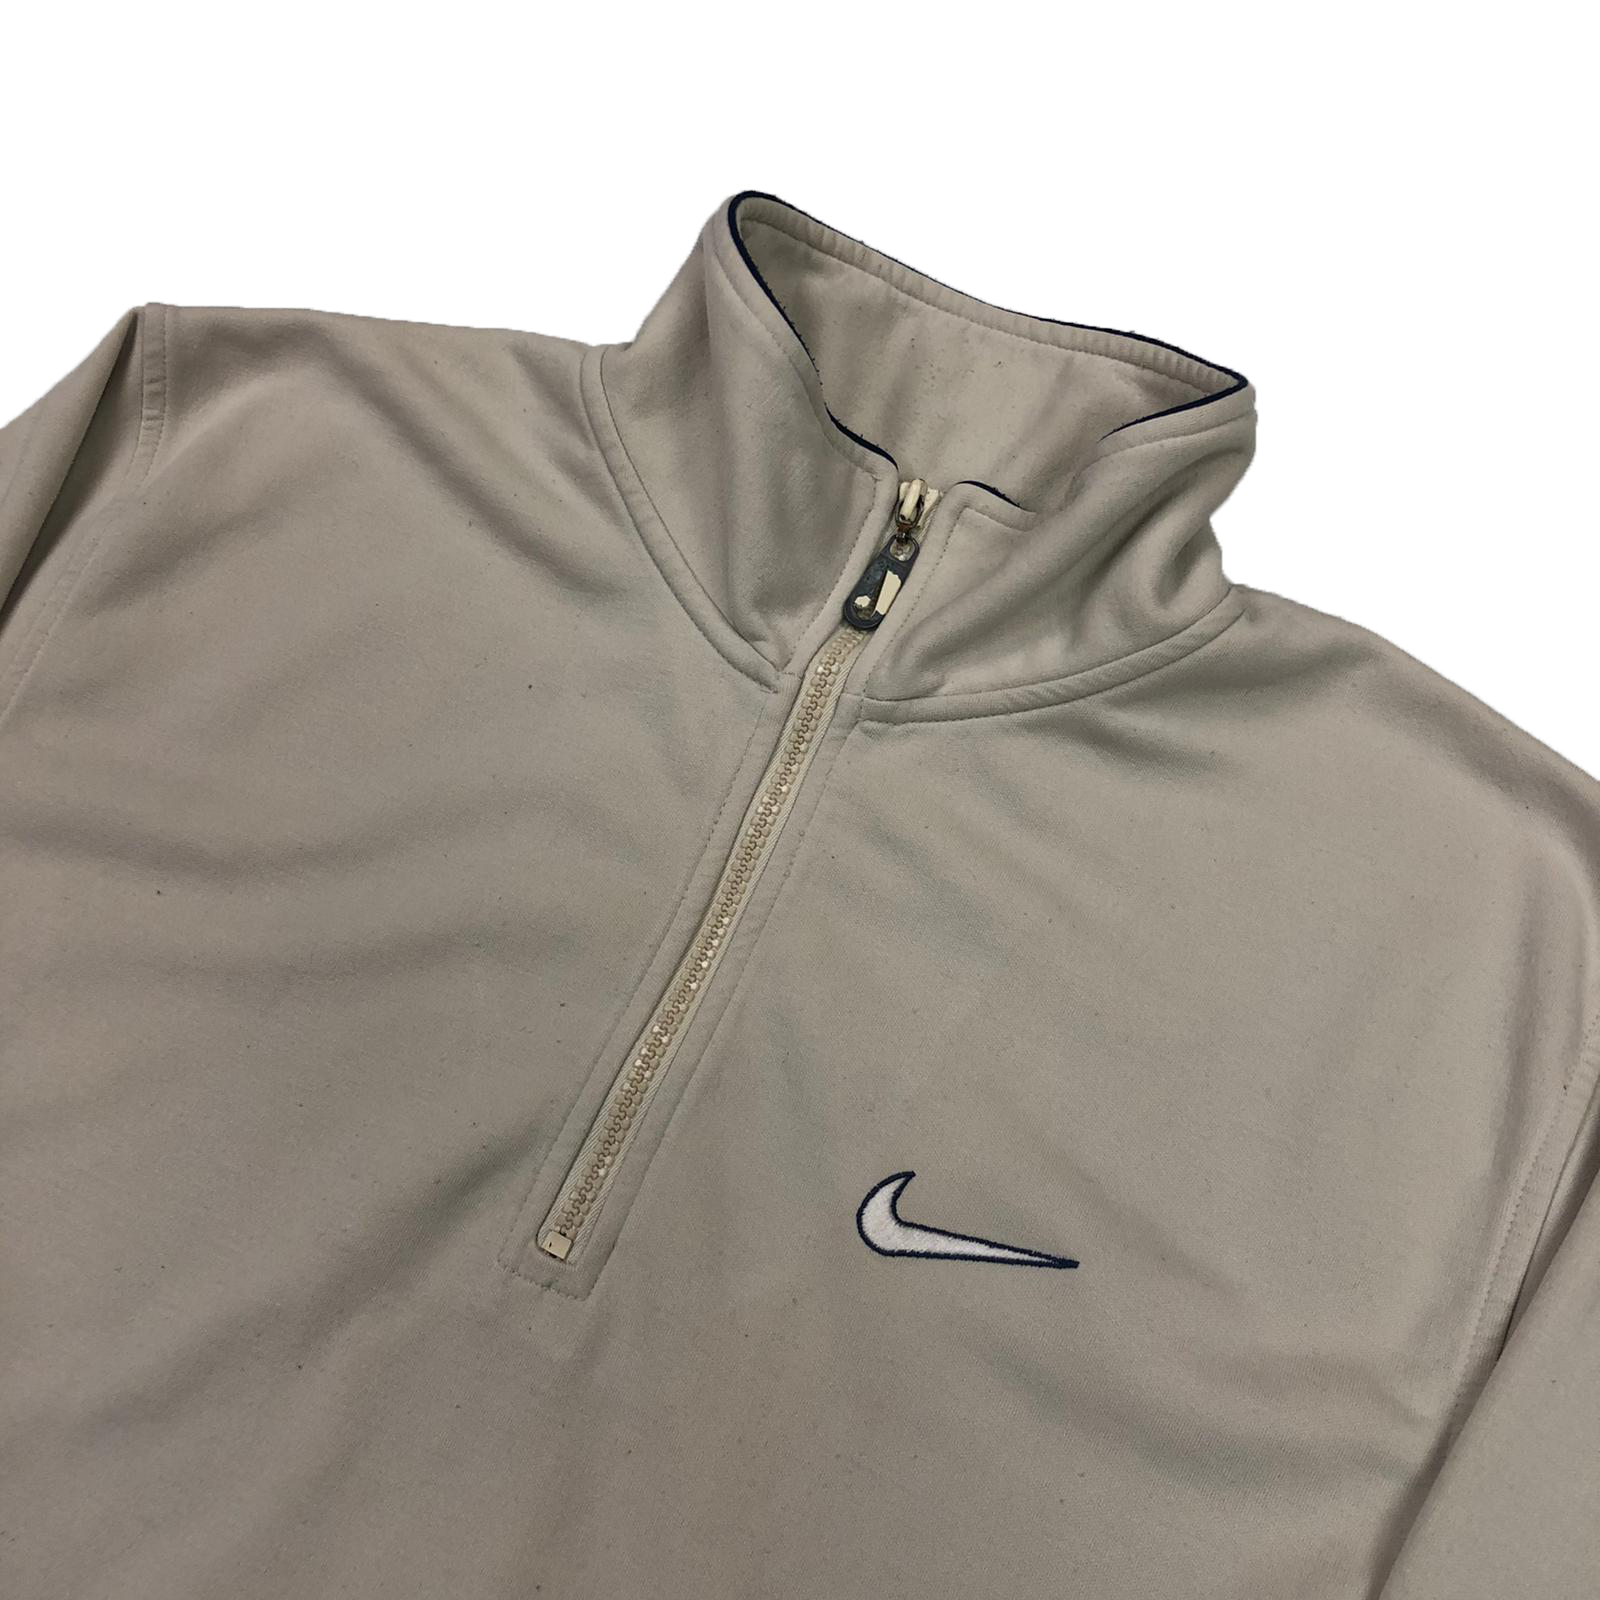 Nike 1/4 zip sweatshirt